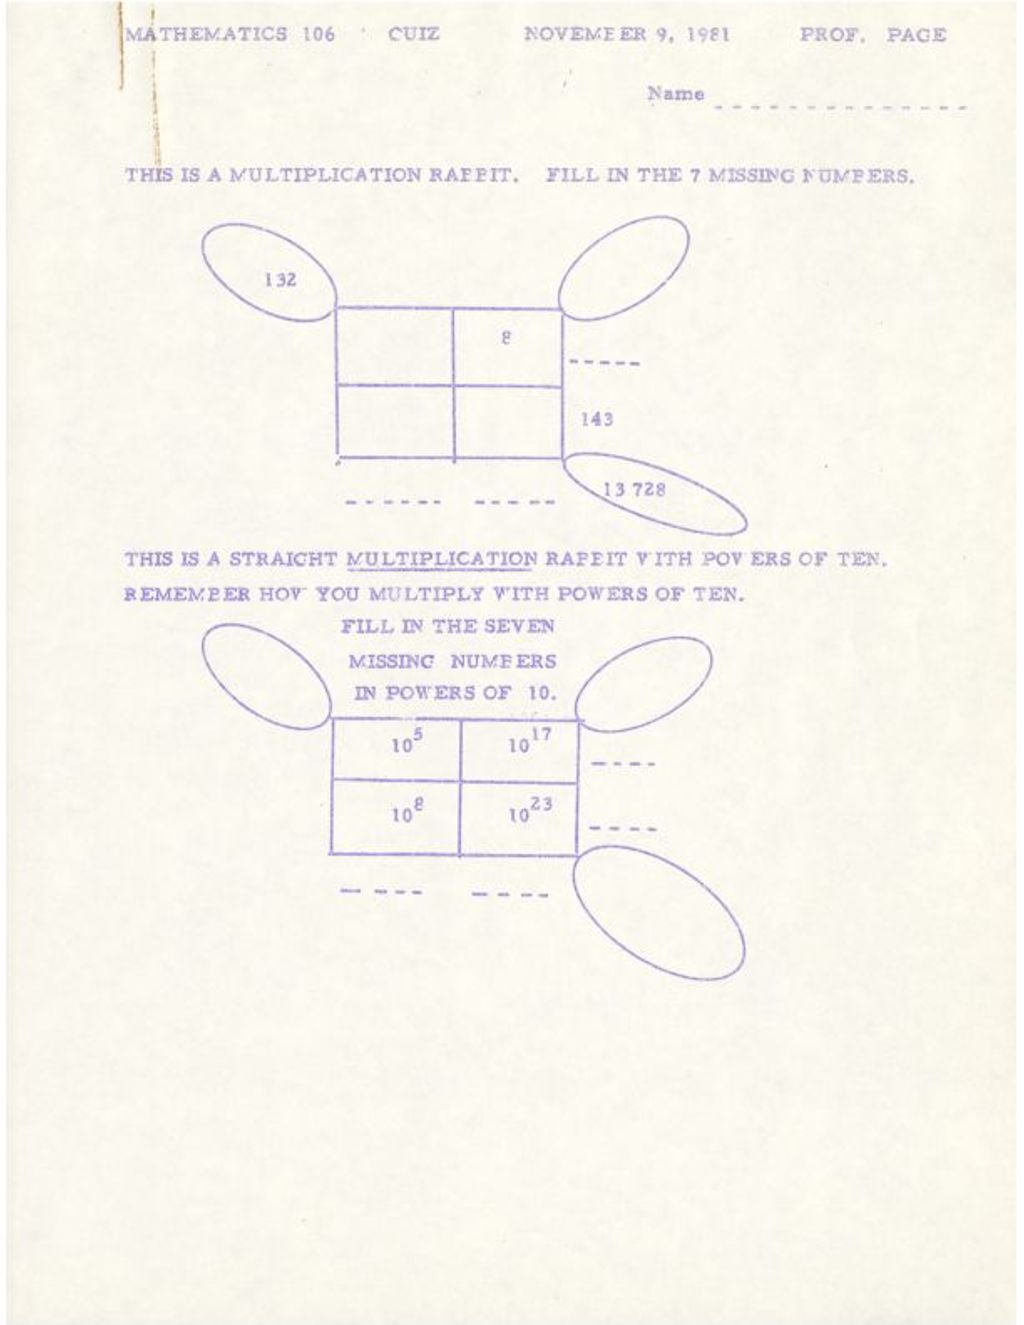 Math 106 Quiz (multiplication rabbit) November 9, 1981